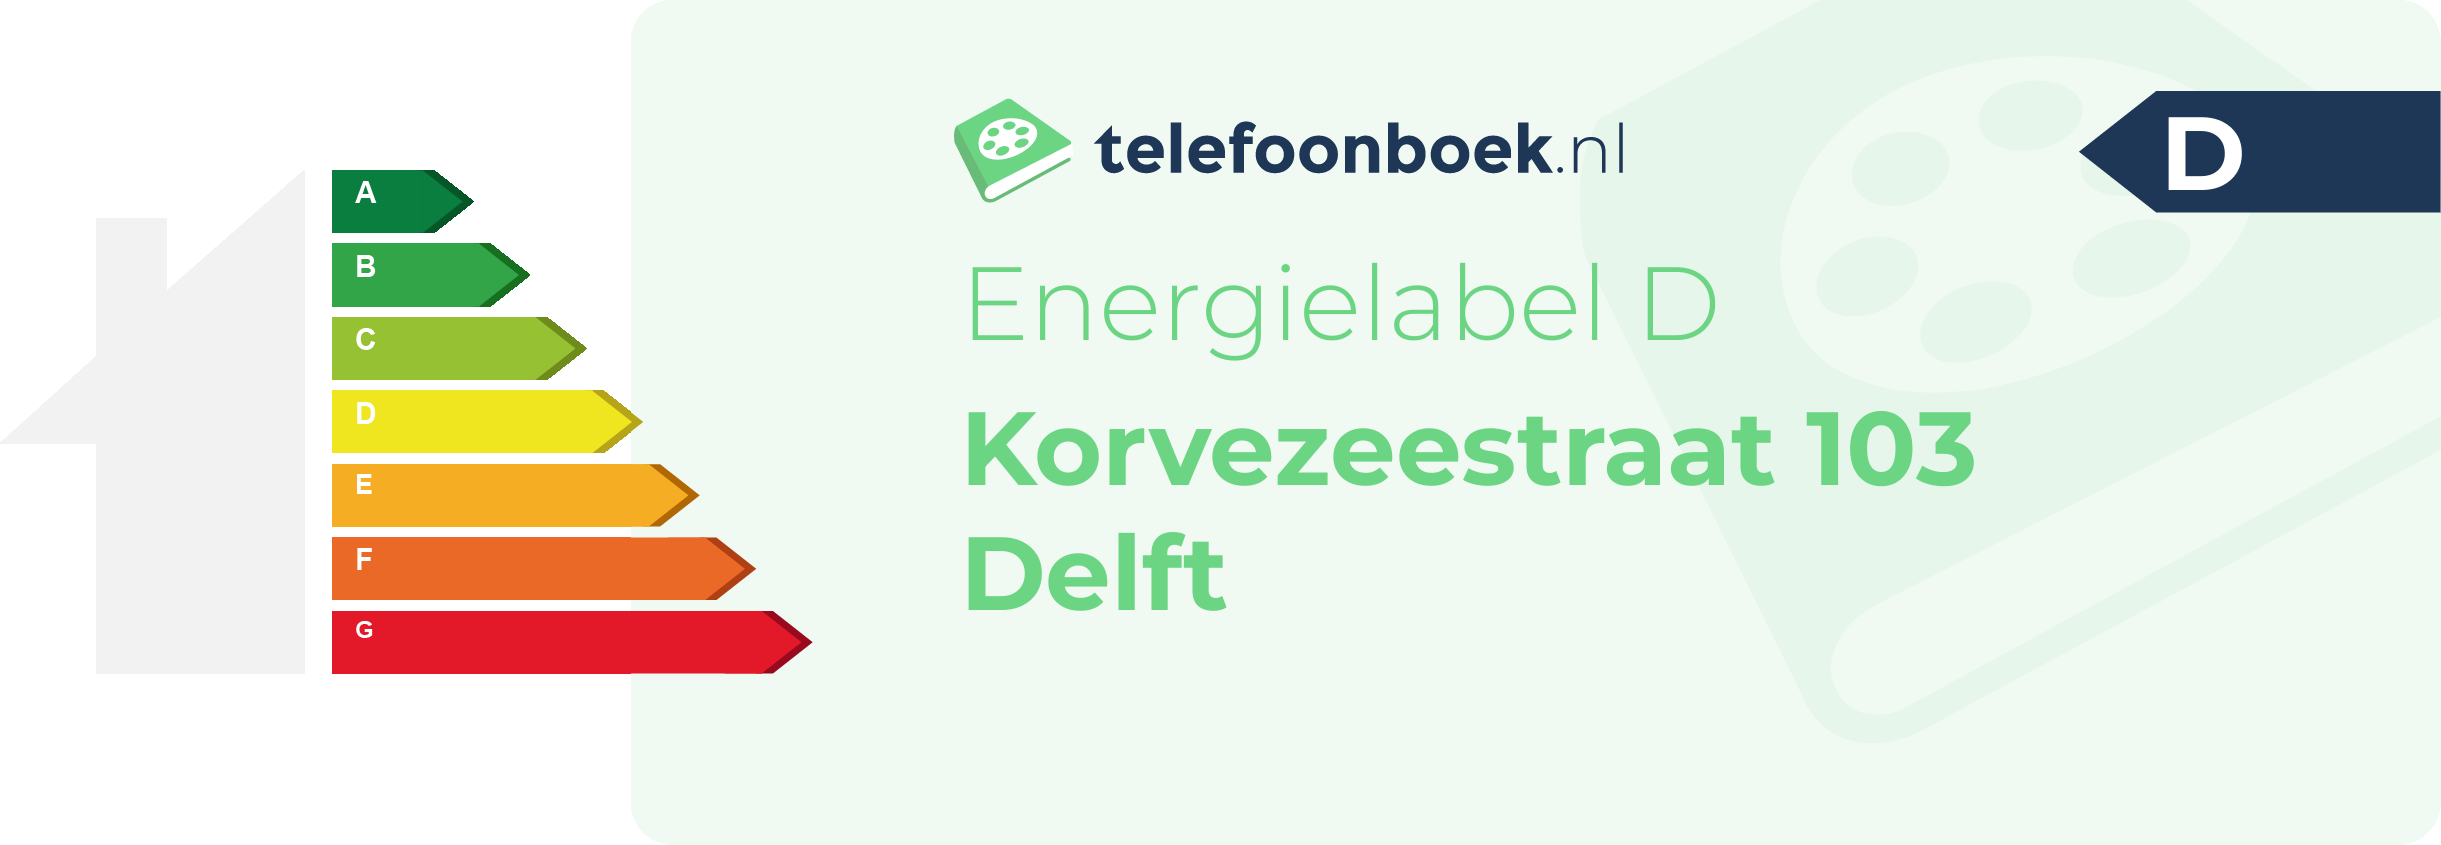 Energielabel Korvezeestraat 103 Delft